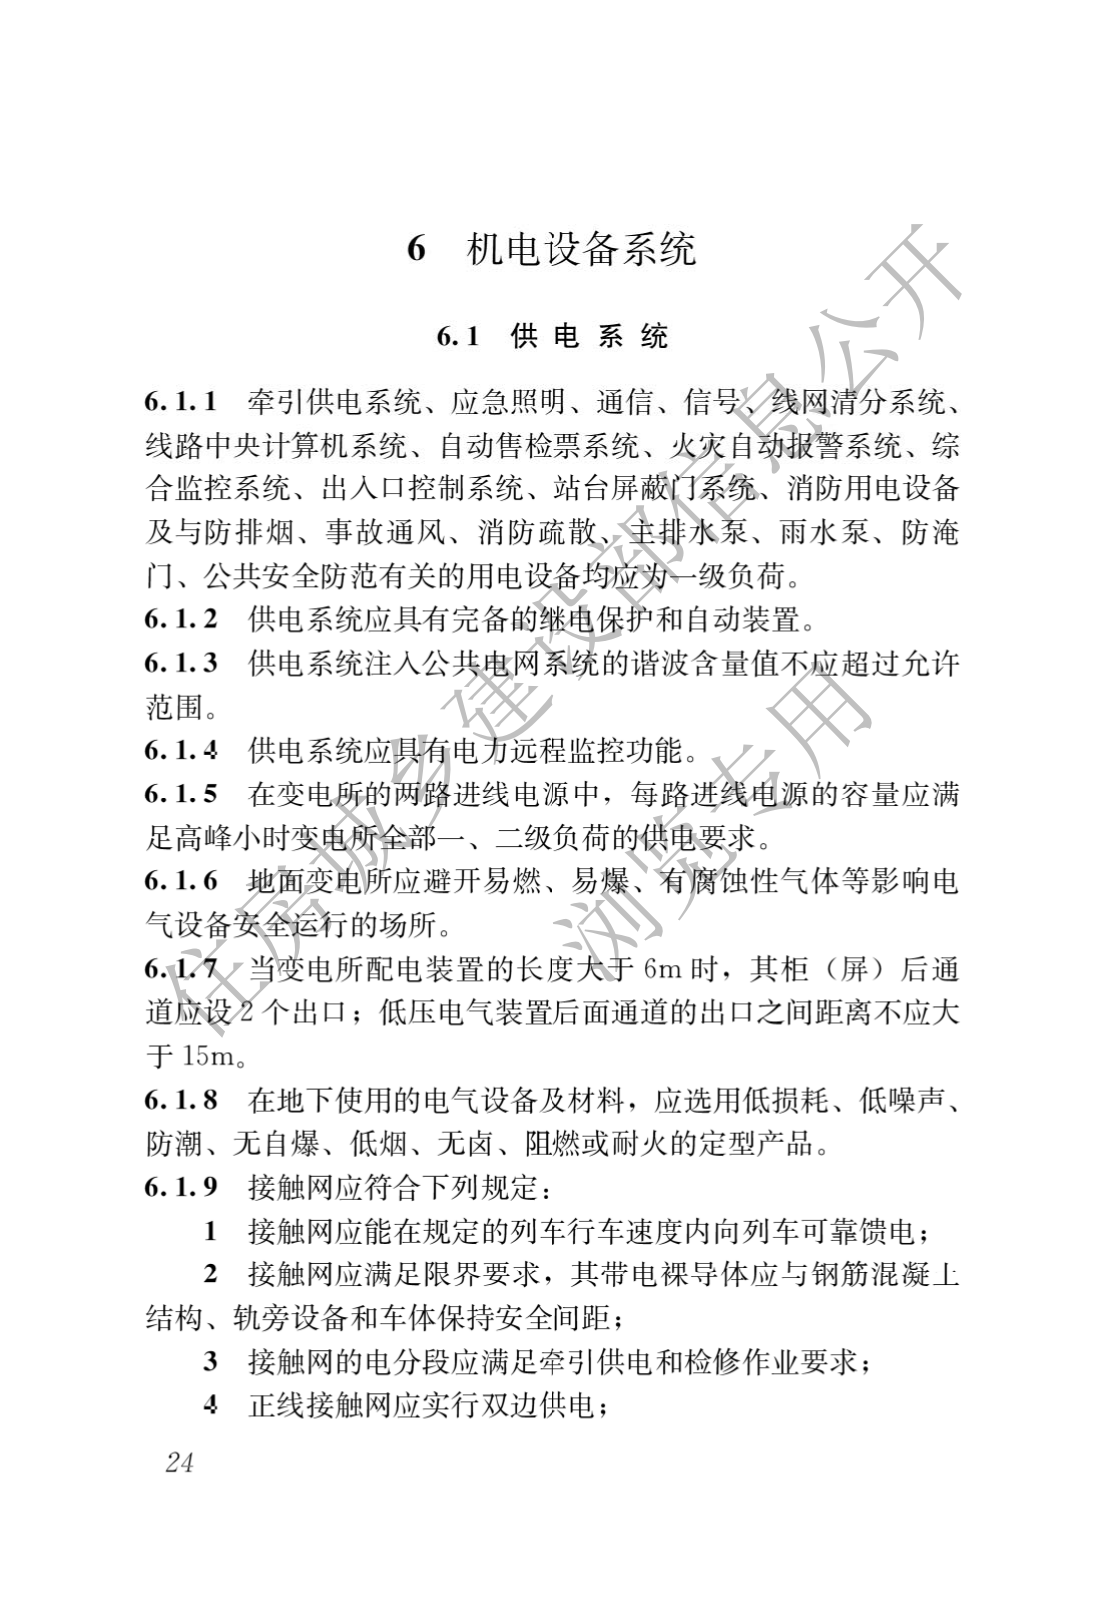 住房和城鄉建設部關于發布國家标準 《城市軌道交通工(gōng)程項目規範》的公告(圖28)